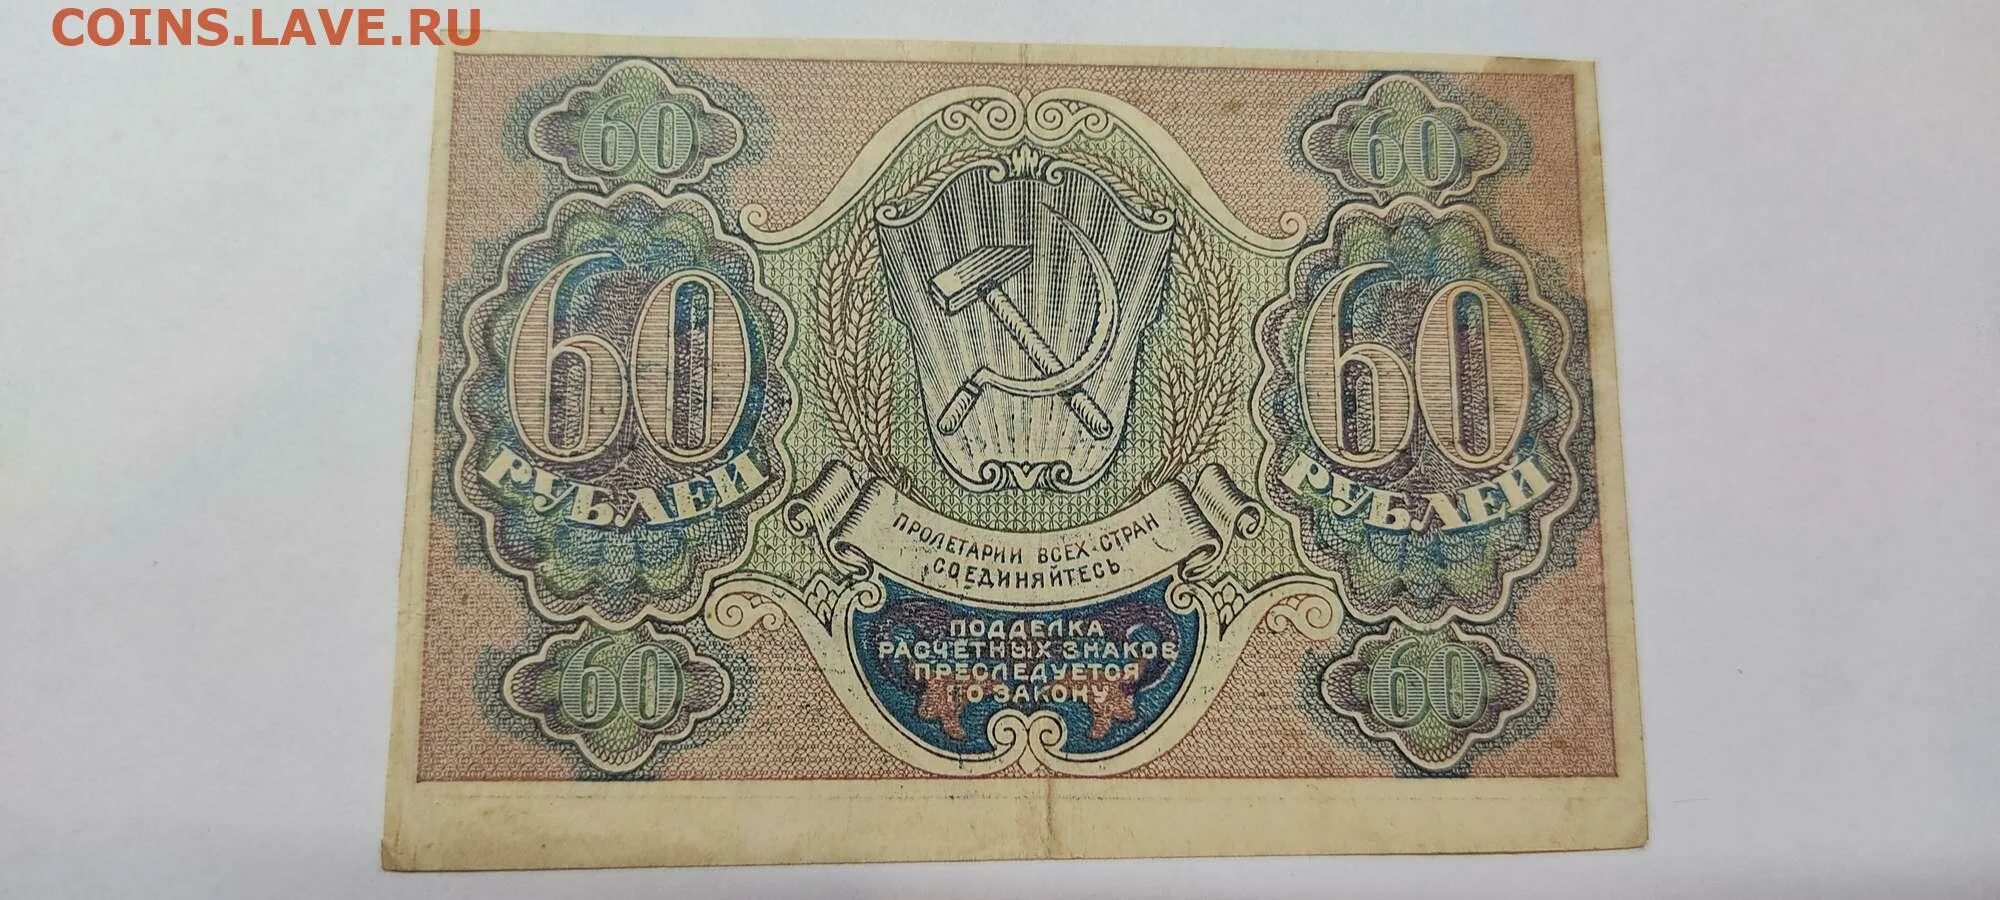 62 рубля 60. 60 Рублей. Расчетный знак 60 рублей. Рубли в 60-х годах XIX В. 60 Рублей фото.